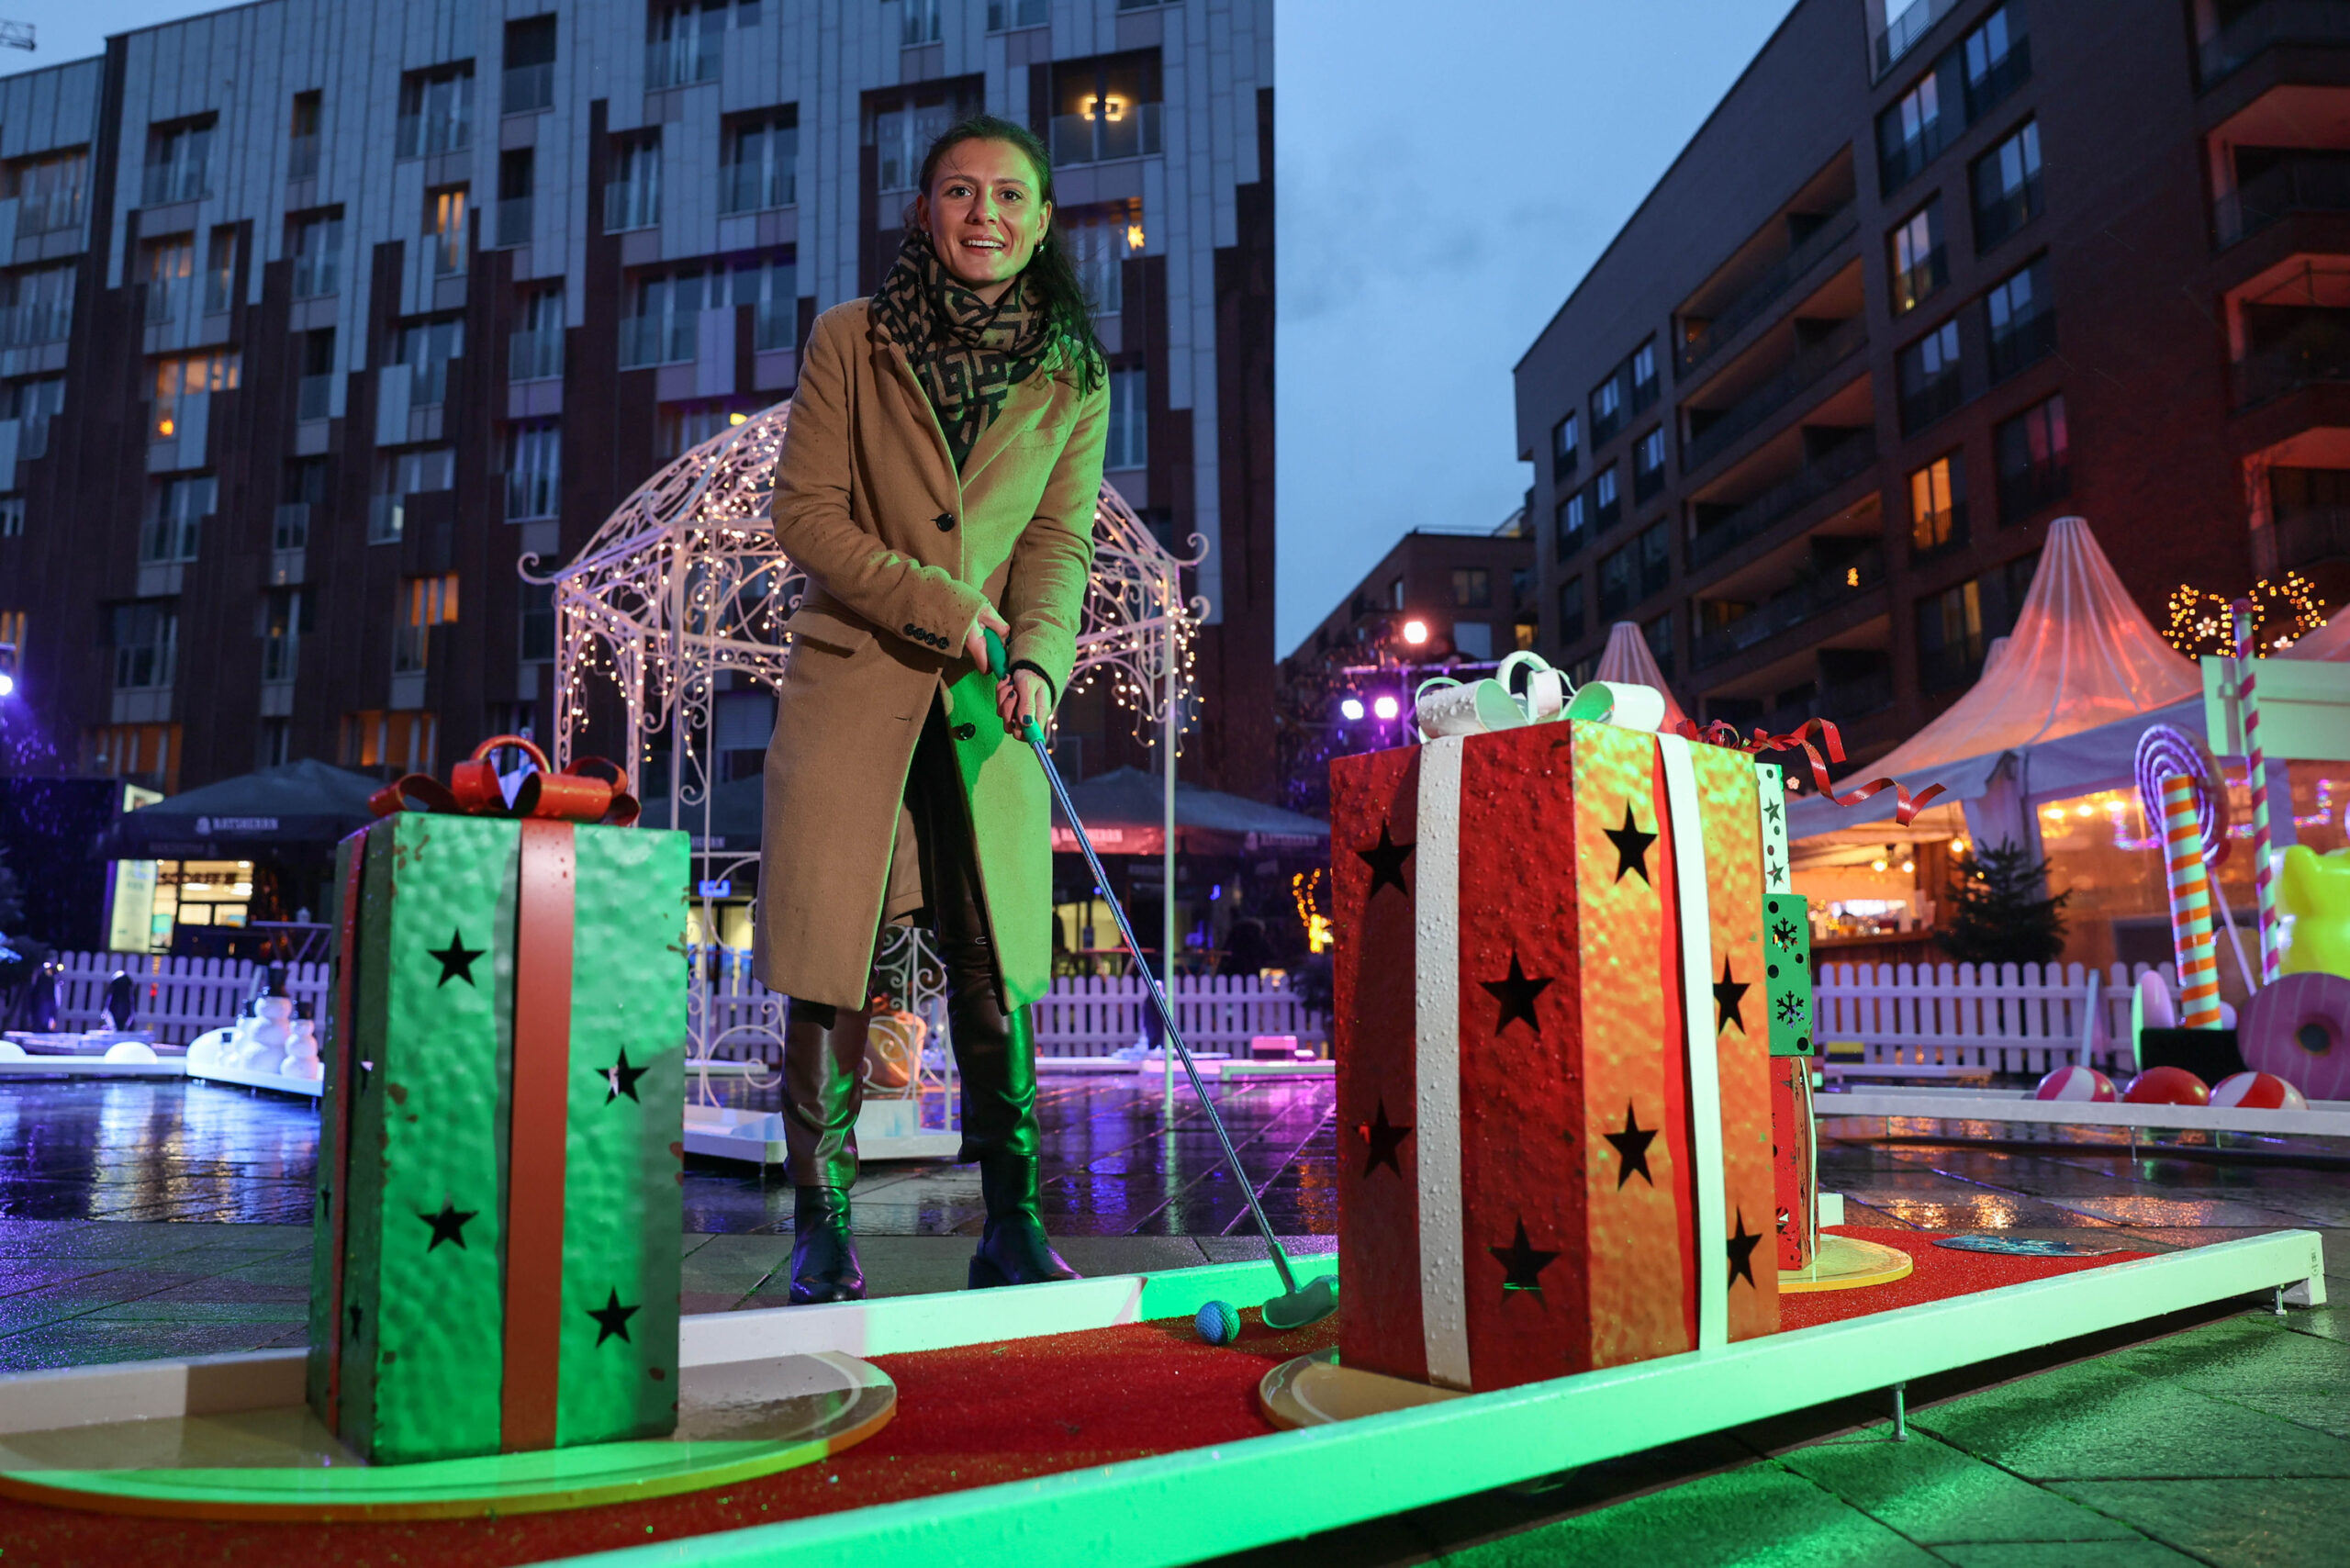 In diesem Jahr gibt's auf dem Marktplatz des Überseeboulevards Wintergolfen statt Schlittschuhlaufen. MOPO-Reporterin Lisa Krüll hat es ausprobiert.